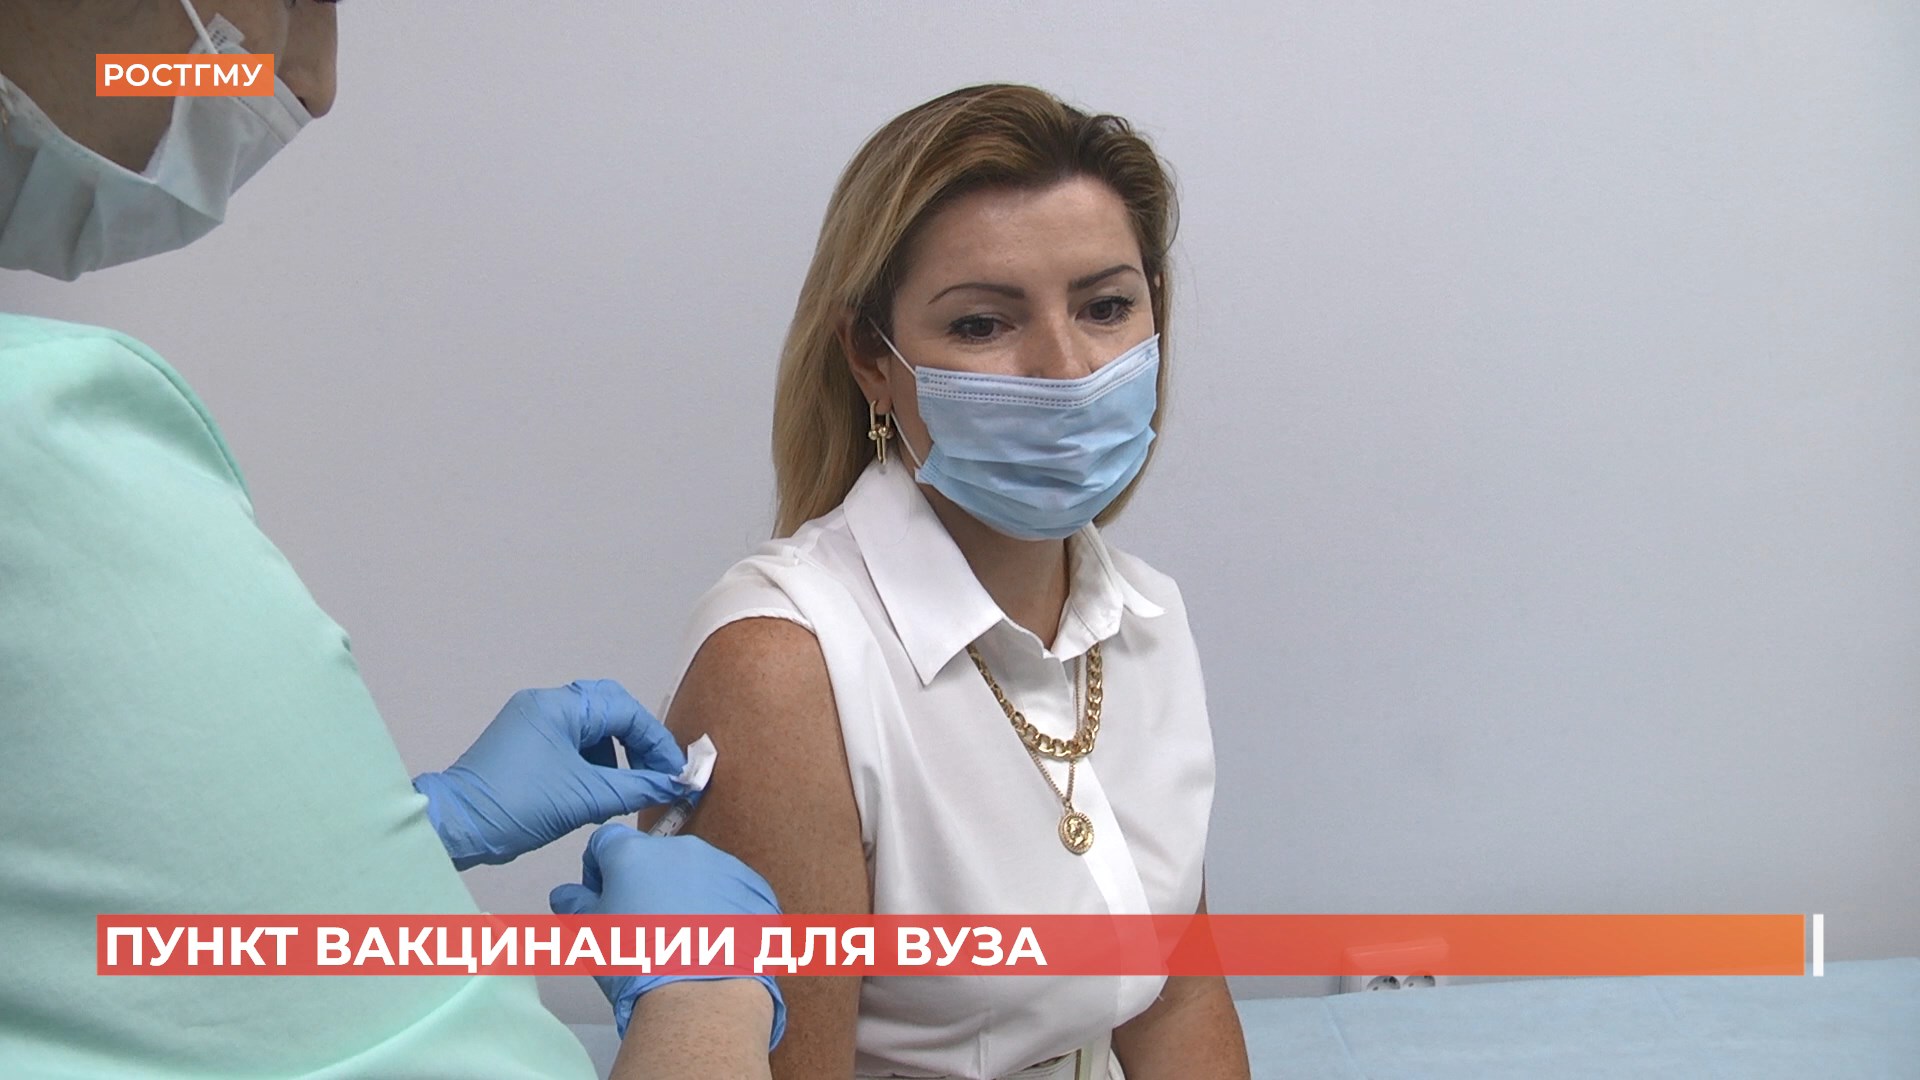 В Ростовском медуниверситете открылся пункт вакцинации для учащихся и преподавателей